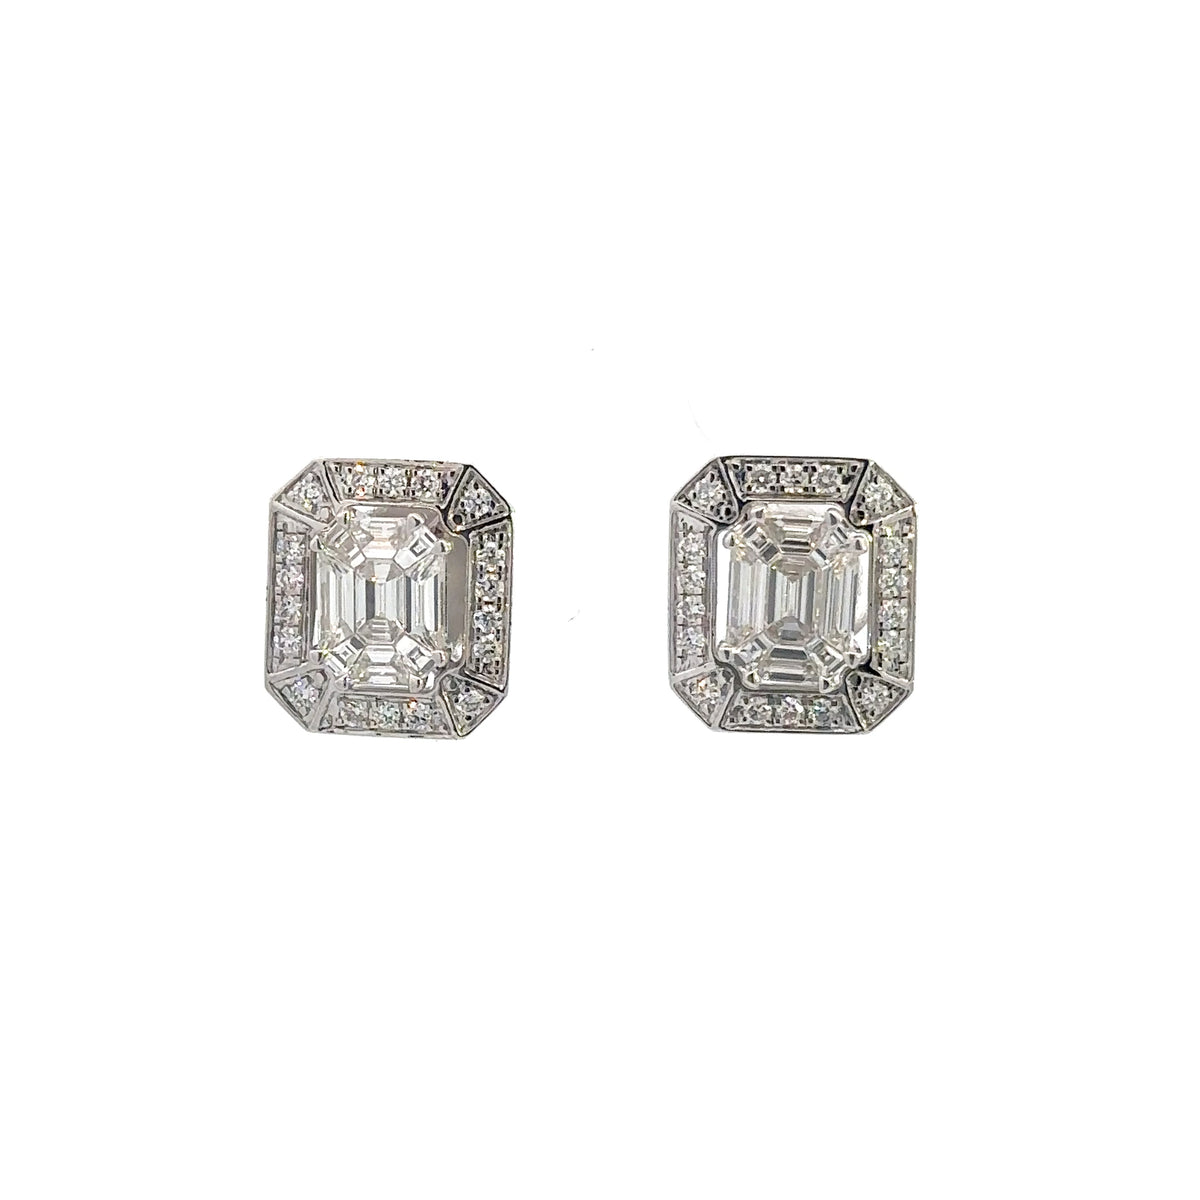 Emerald Cut Diamond Stud Earrings in 14K White Gold